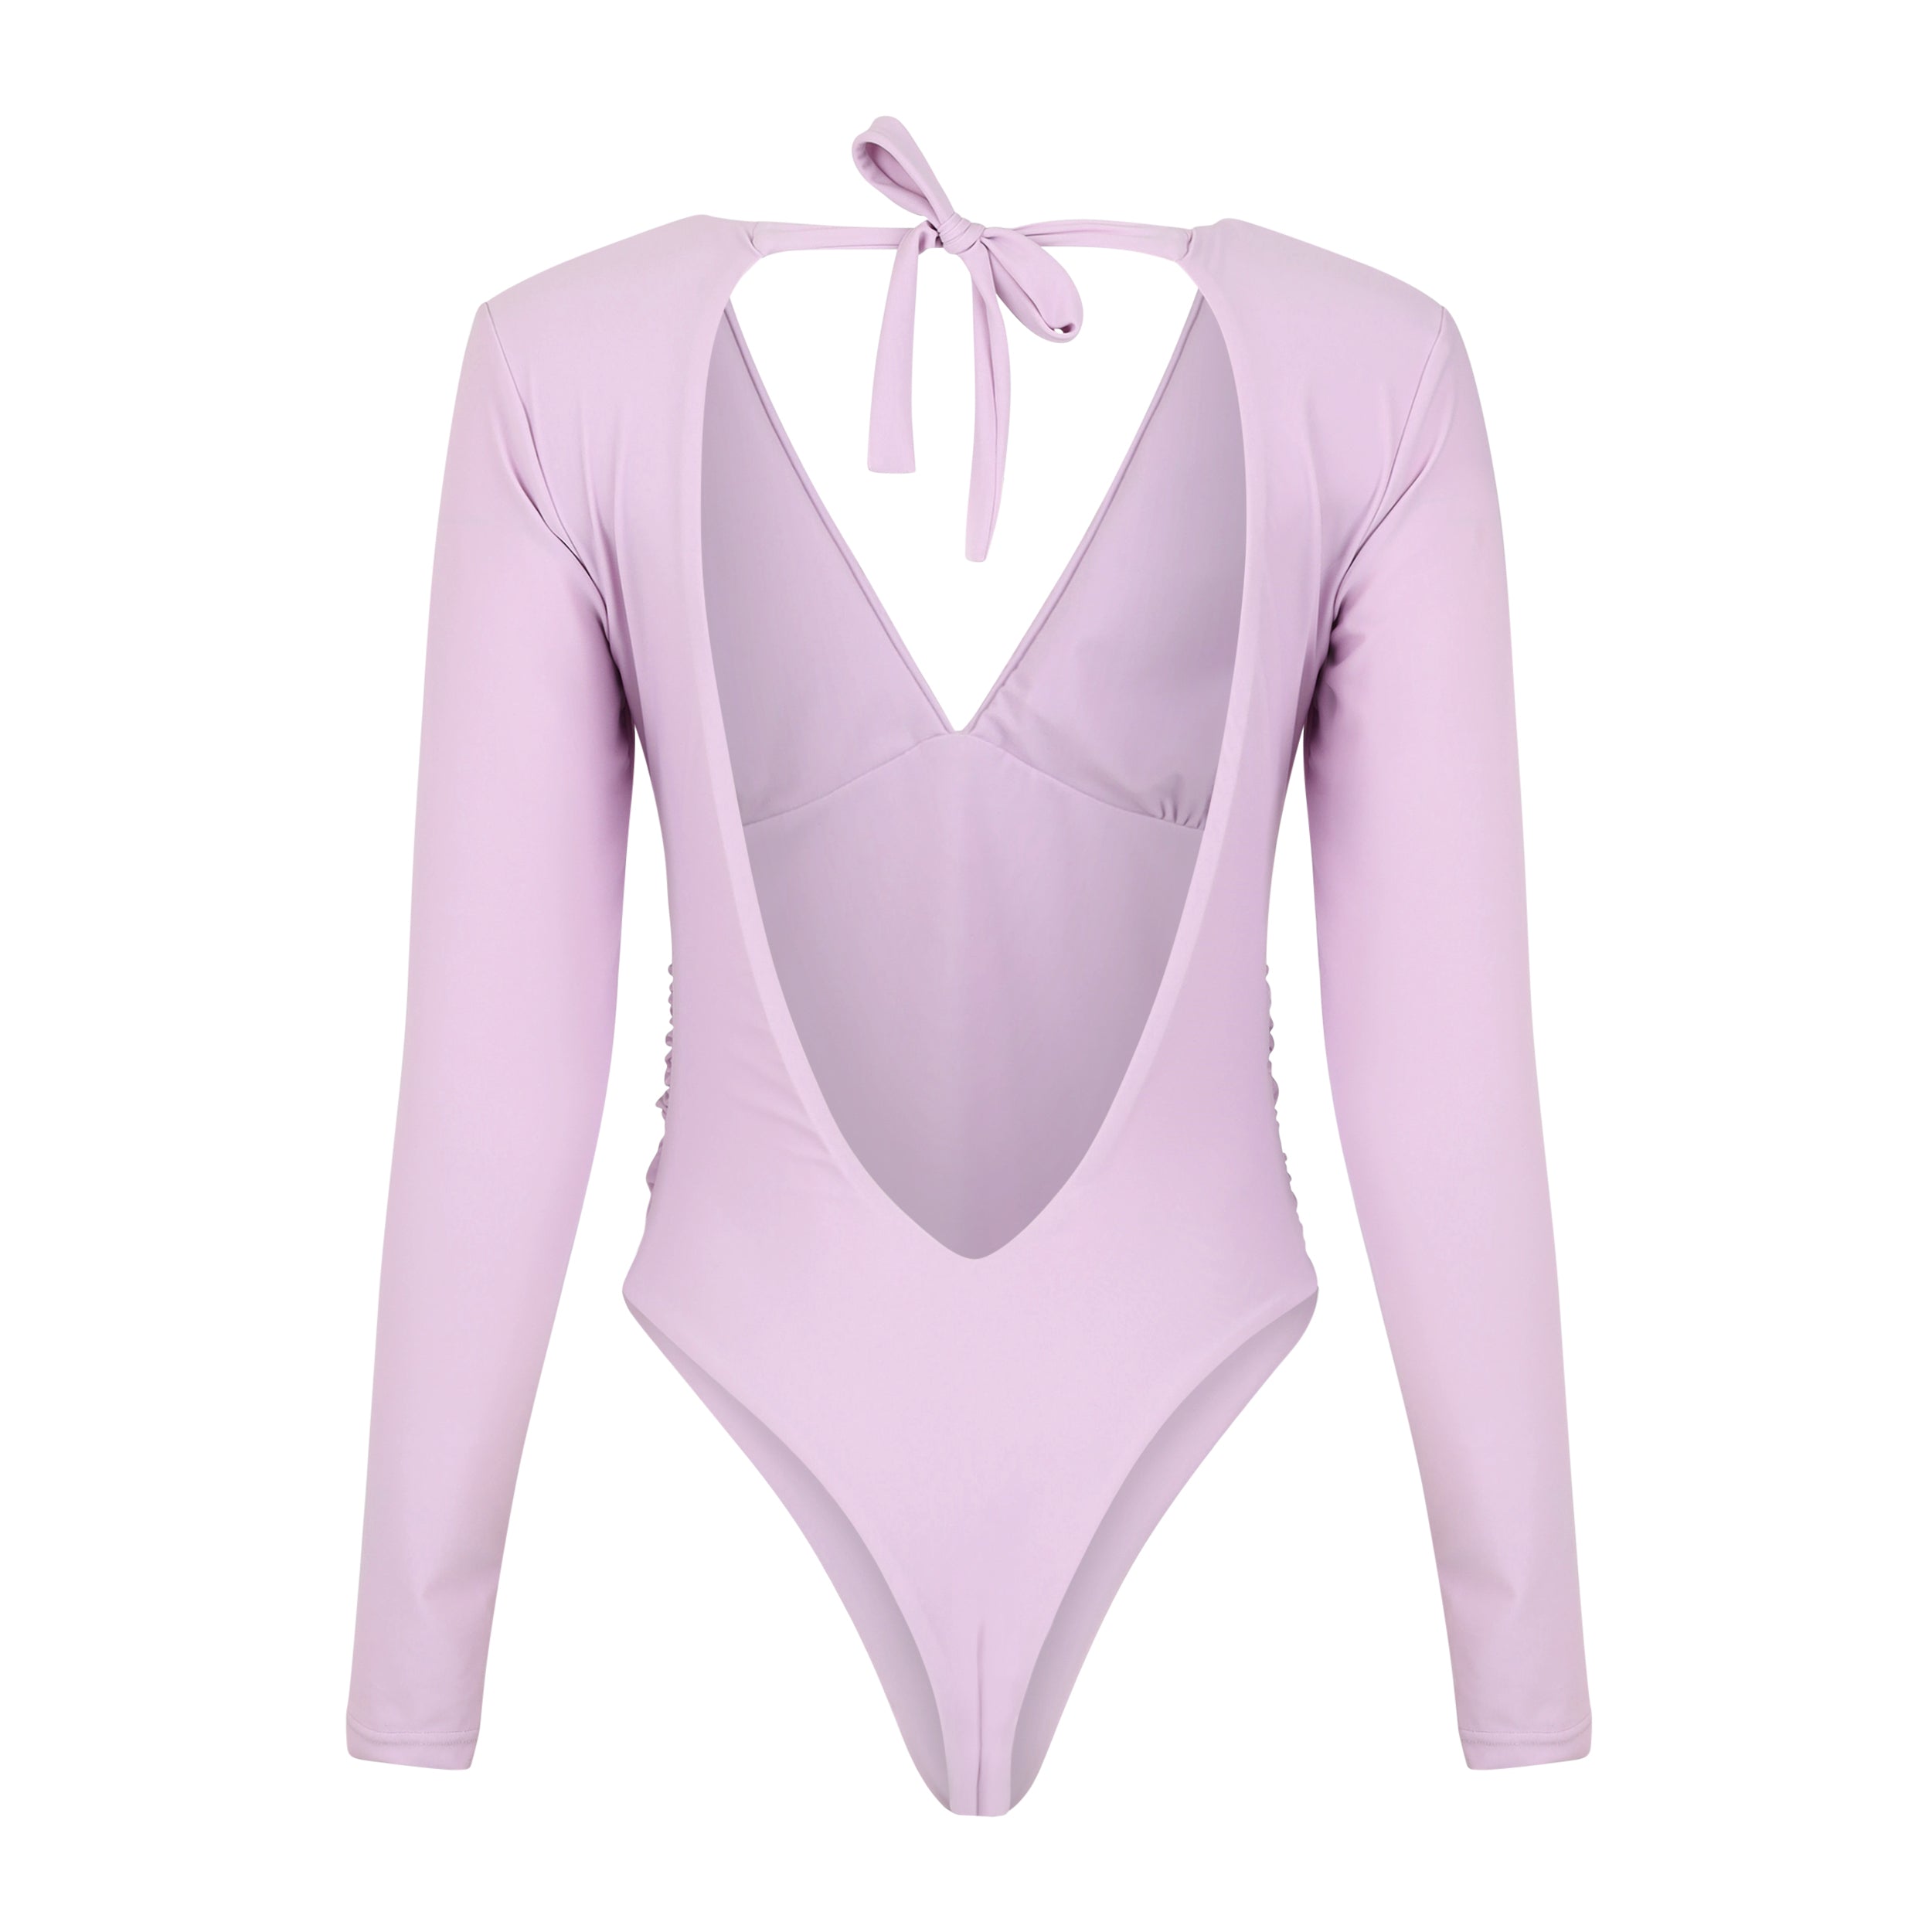 Malibu Surf Suit - Lavender